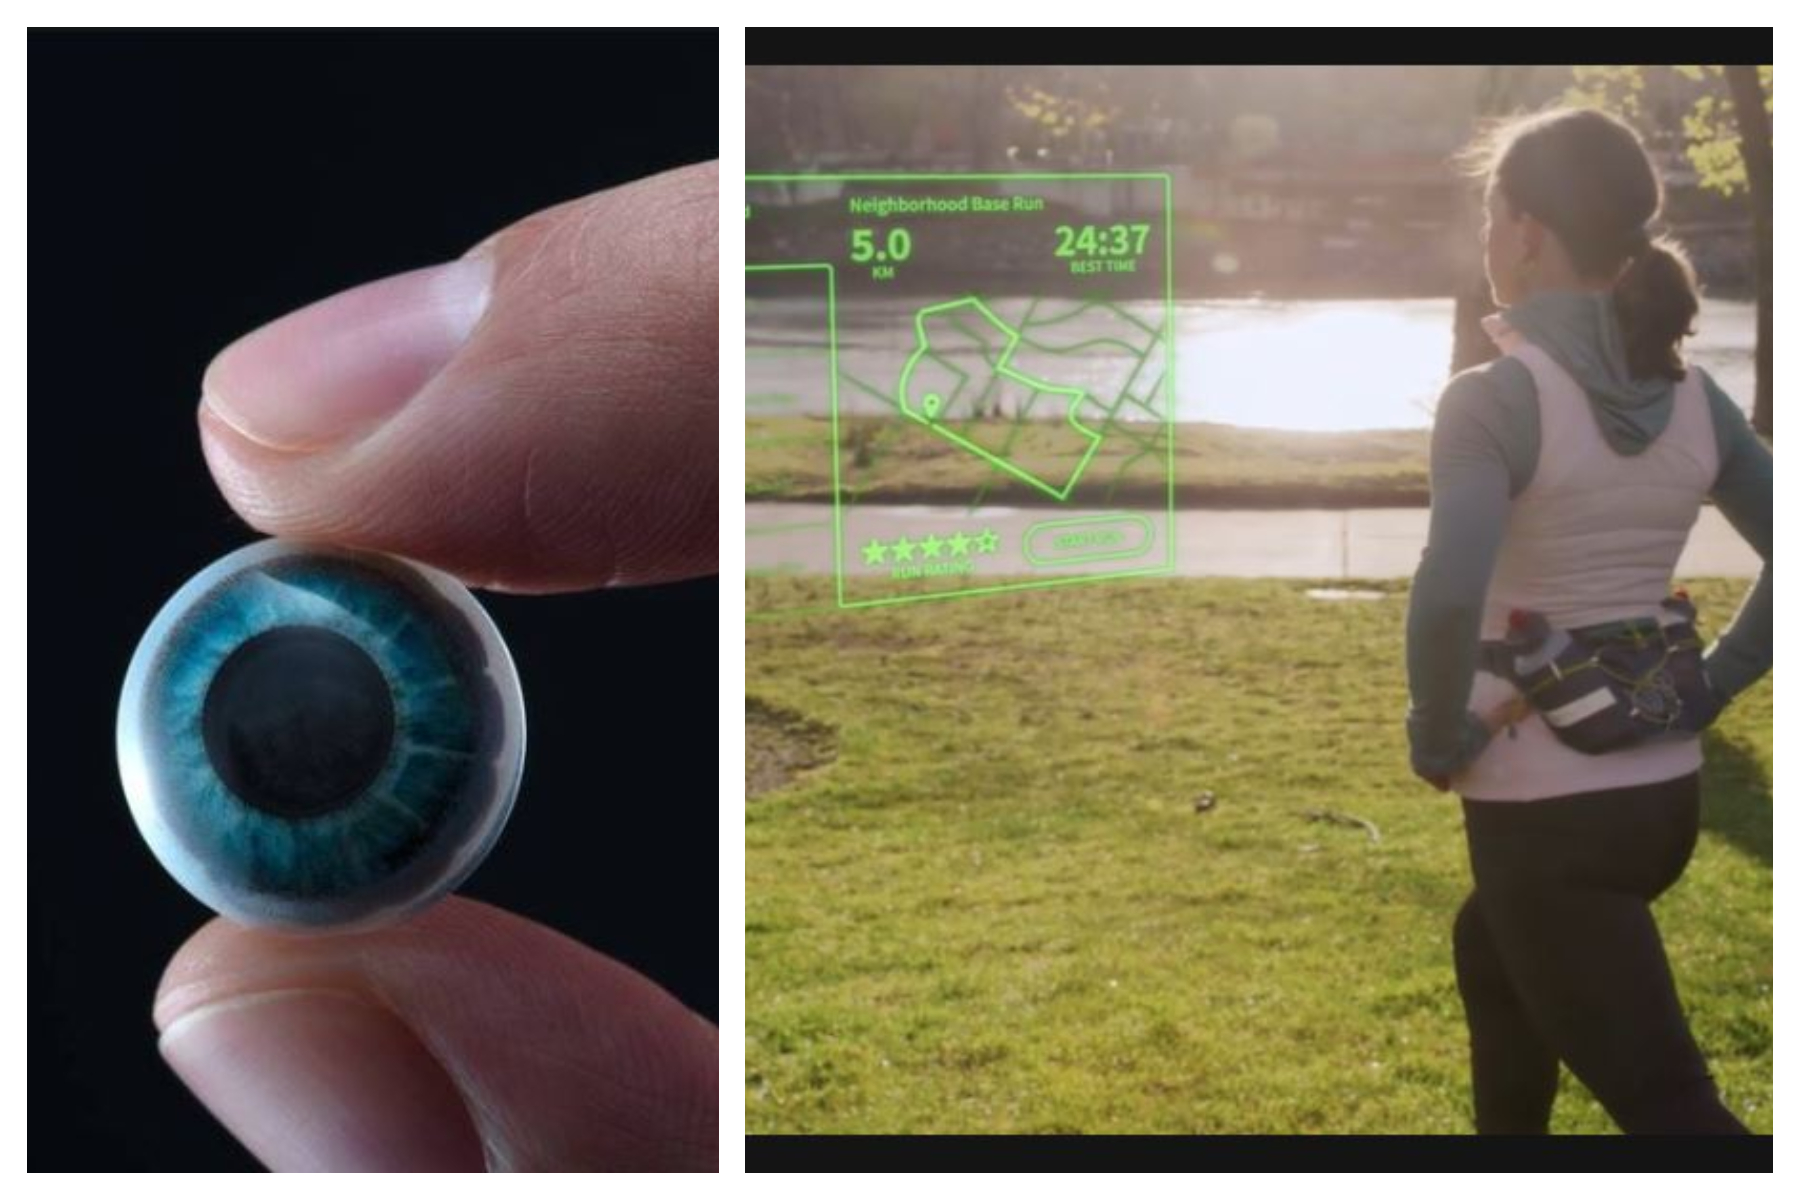 Mojo Lens es un lente de contacto inteligente que le proporciona información mientras hace cualquier actividad. (Foto Prensa Libre: www.mojo.vision/).